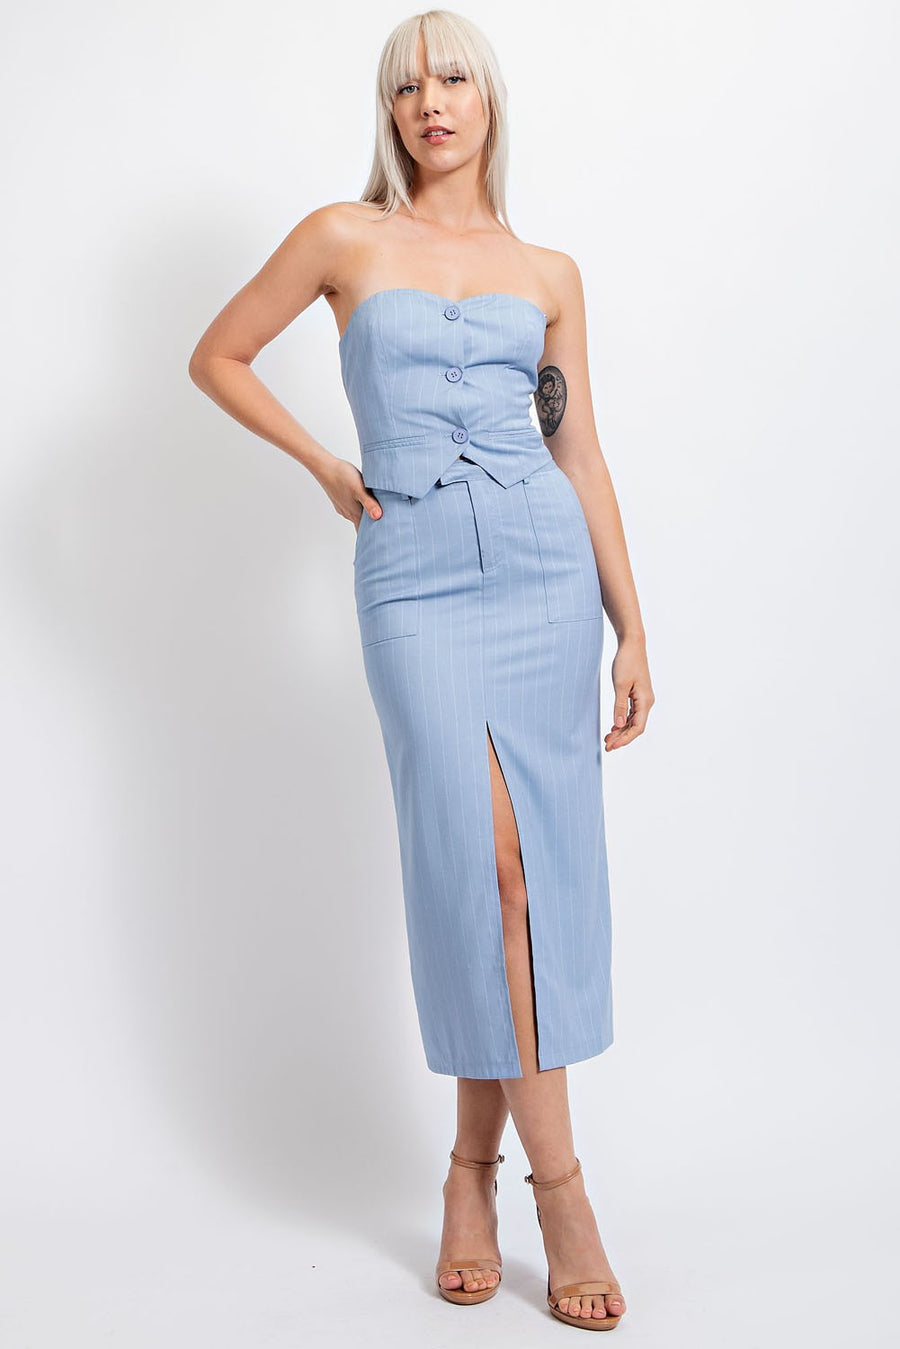 Light blue midi skirt with front slit.